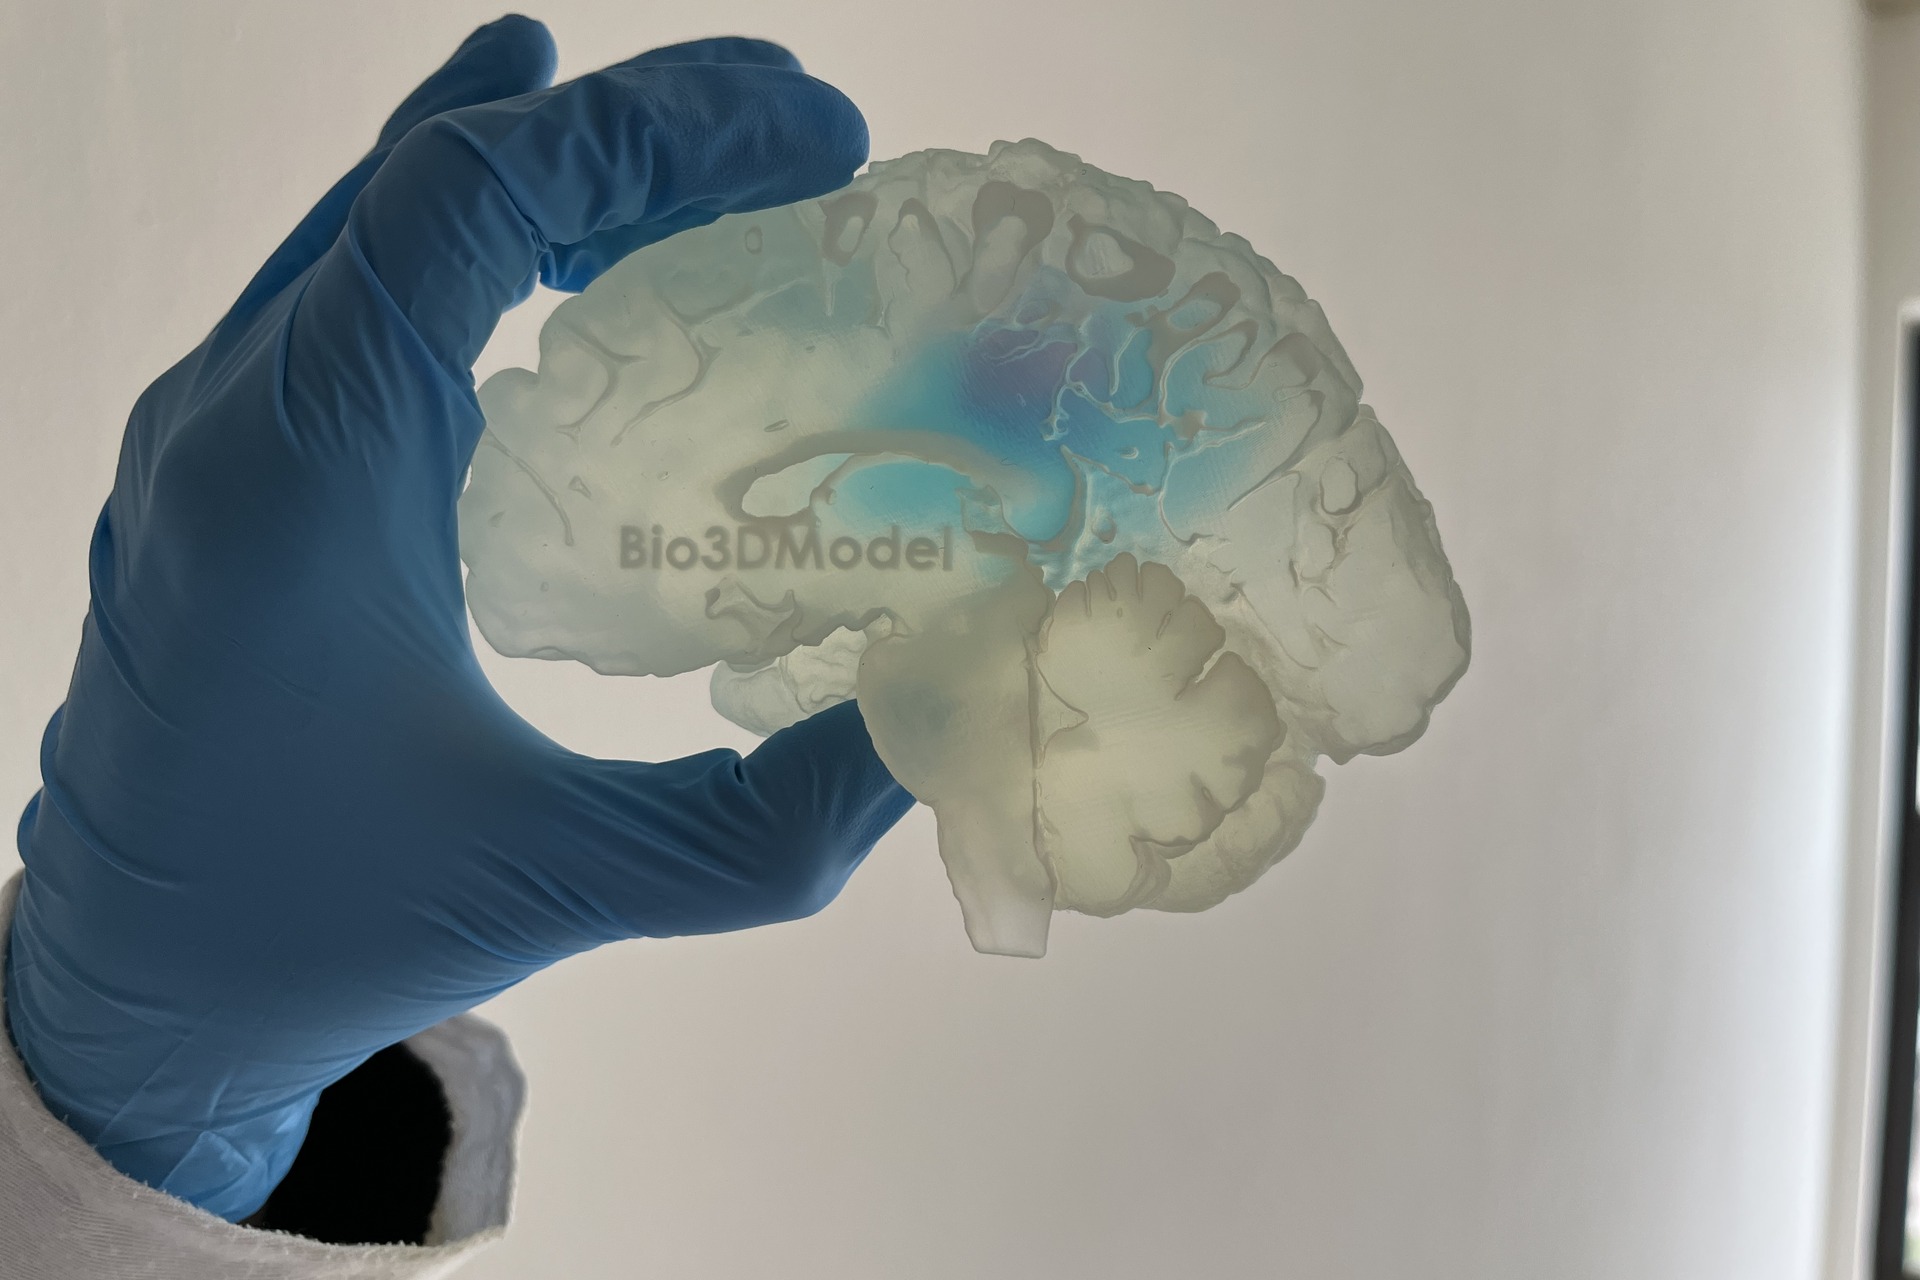 Человеческий мозг: репродукция пораженного метастазами мозга, напечатанная в 3D итальянской компанией Bio3DModel.